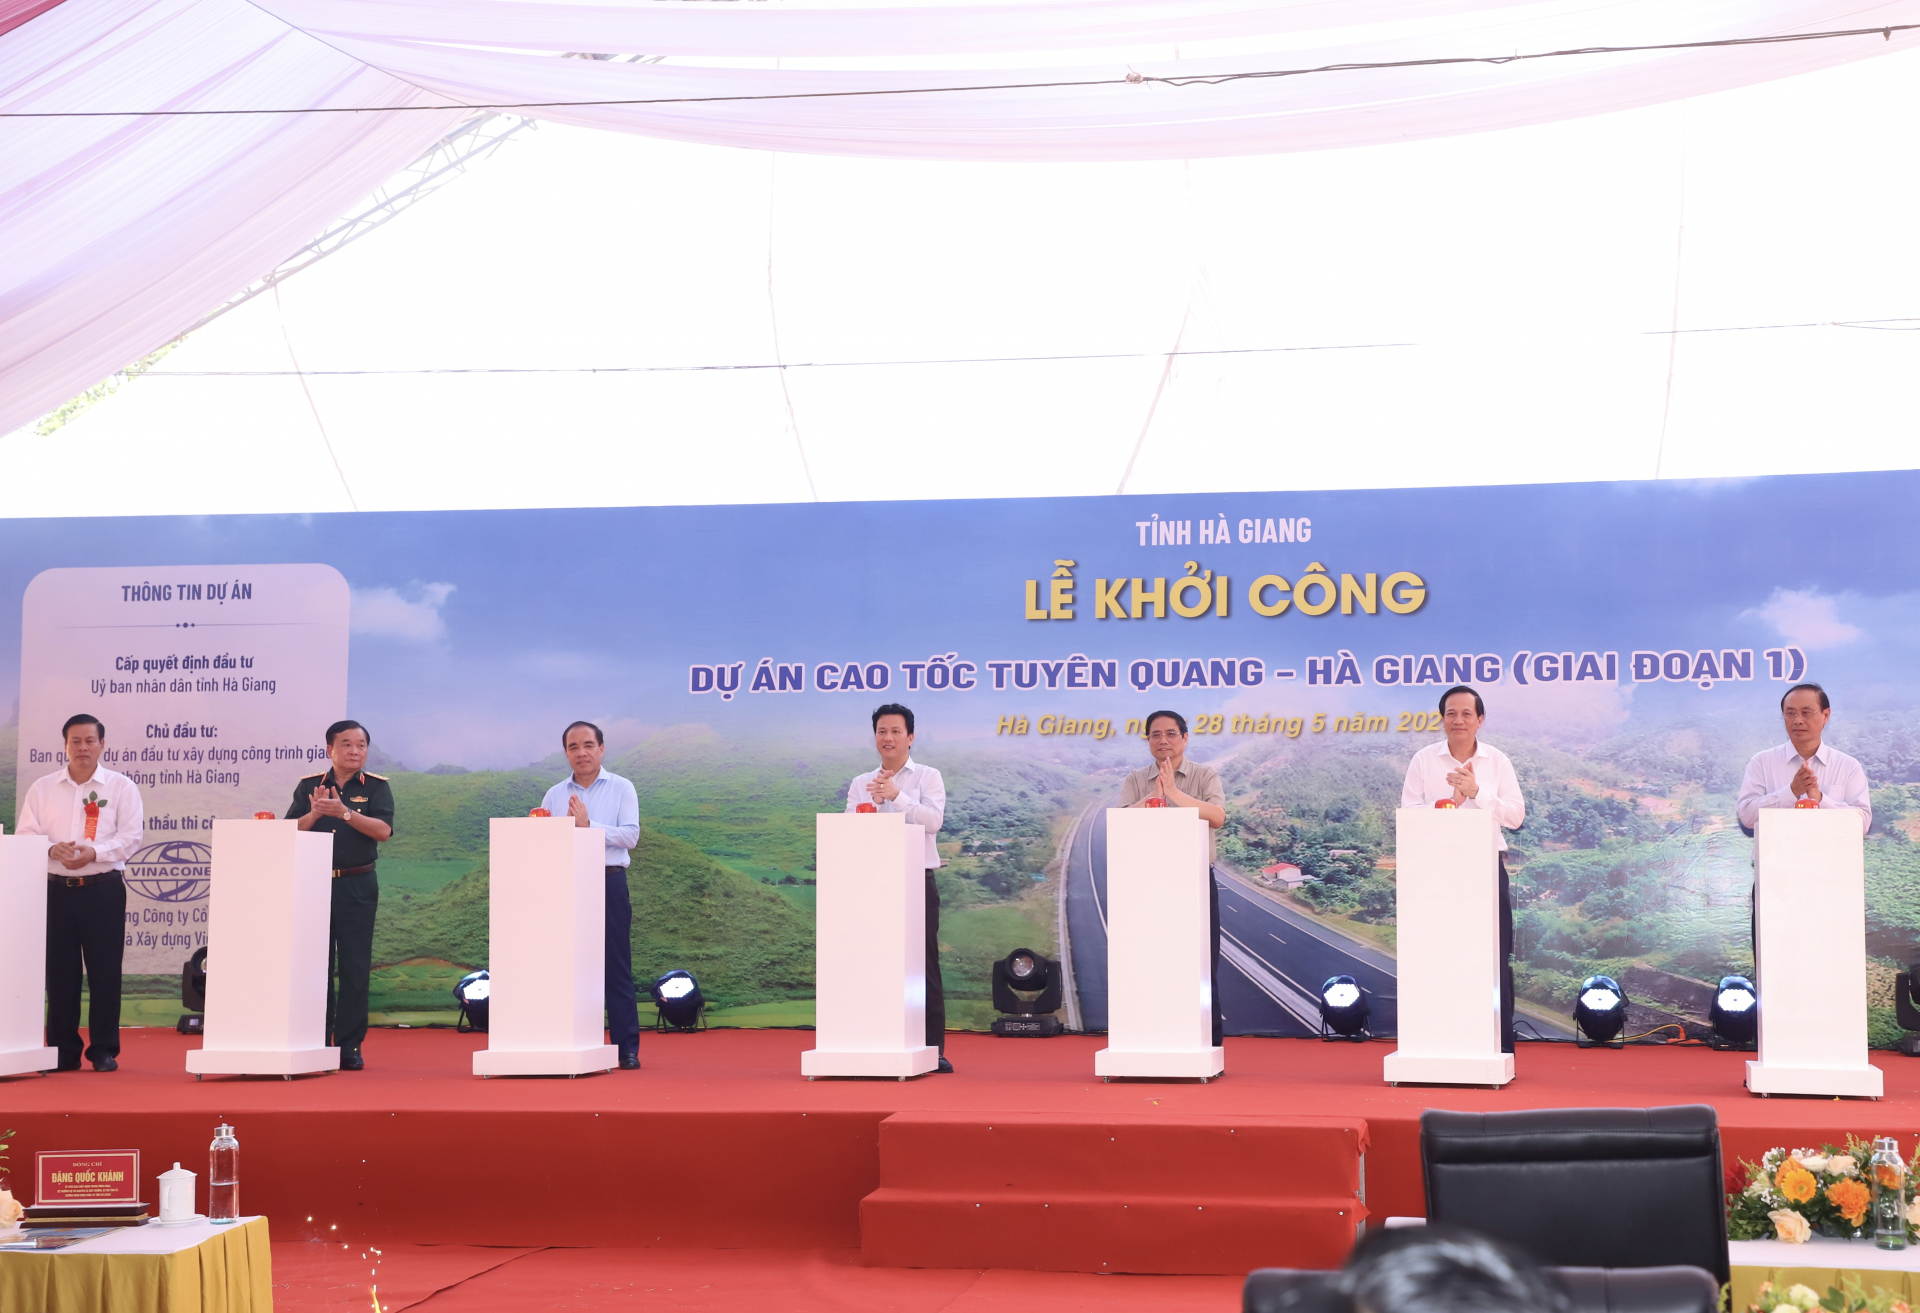 Thủ tướng Phạm Minh Chính cùng các đồng chí lãnh đạo bộ, ngành T.Ư và 2 tỉnh Hà Giang, Tuyên Quang thực hiện nghi thức bấm nút khởi công dự án